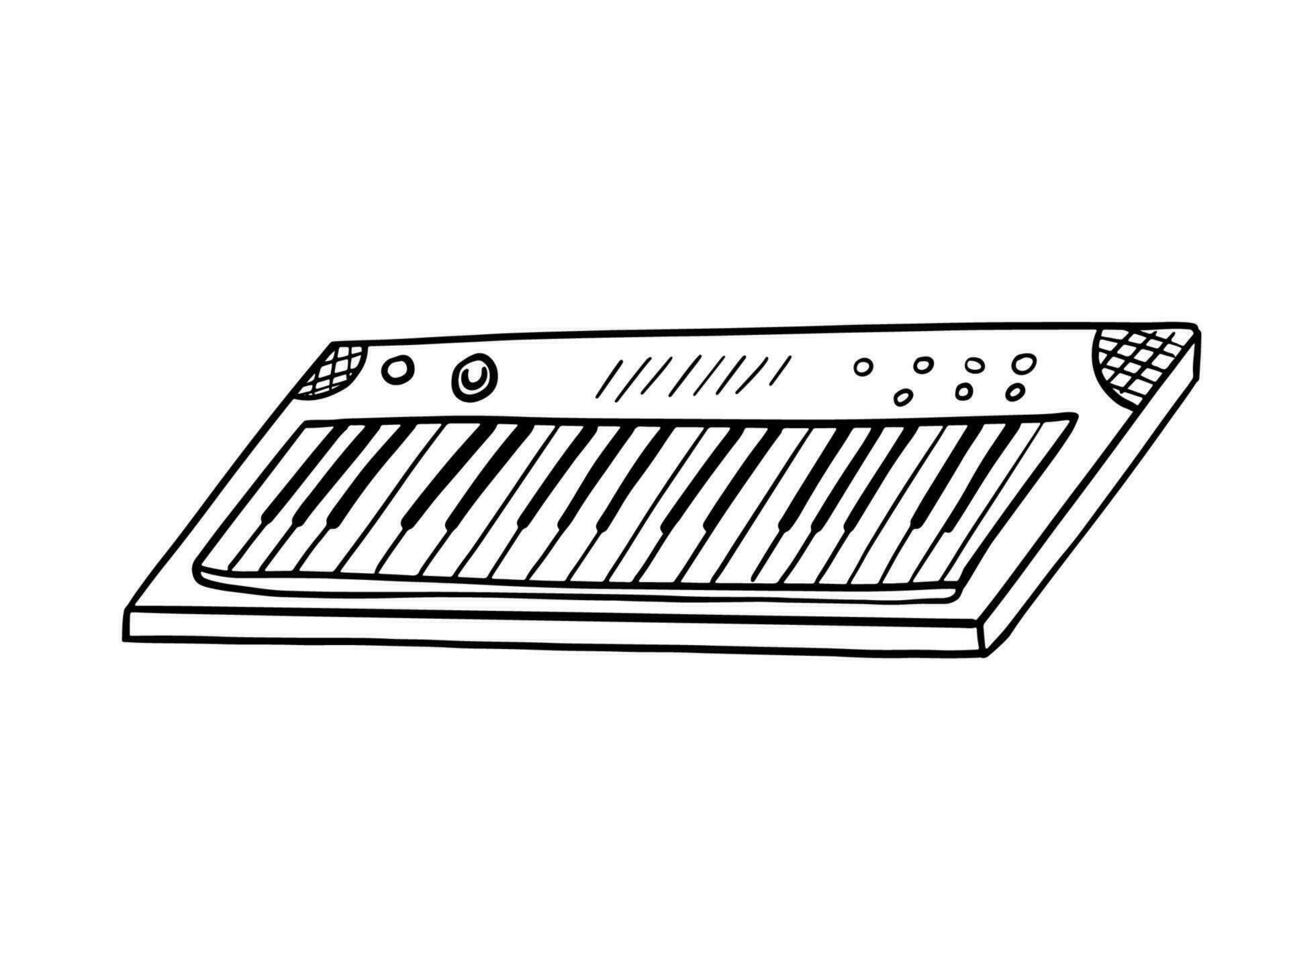 rabisco sintetizador. vetor esboço do musical instrumento, Preto esboço ilustração